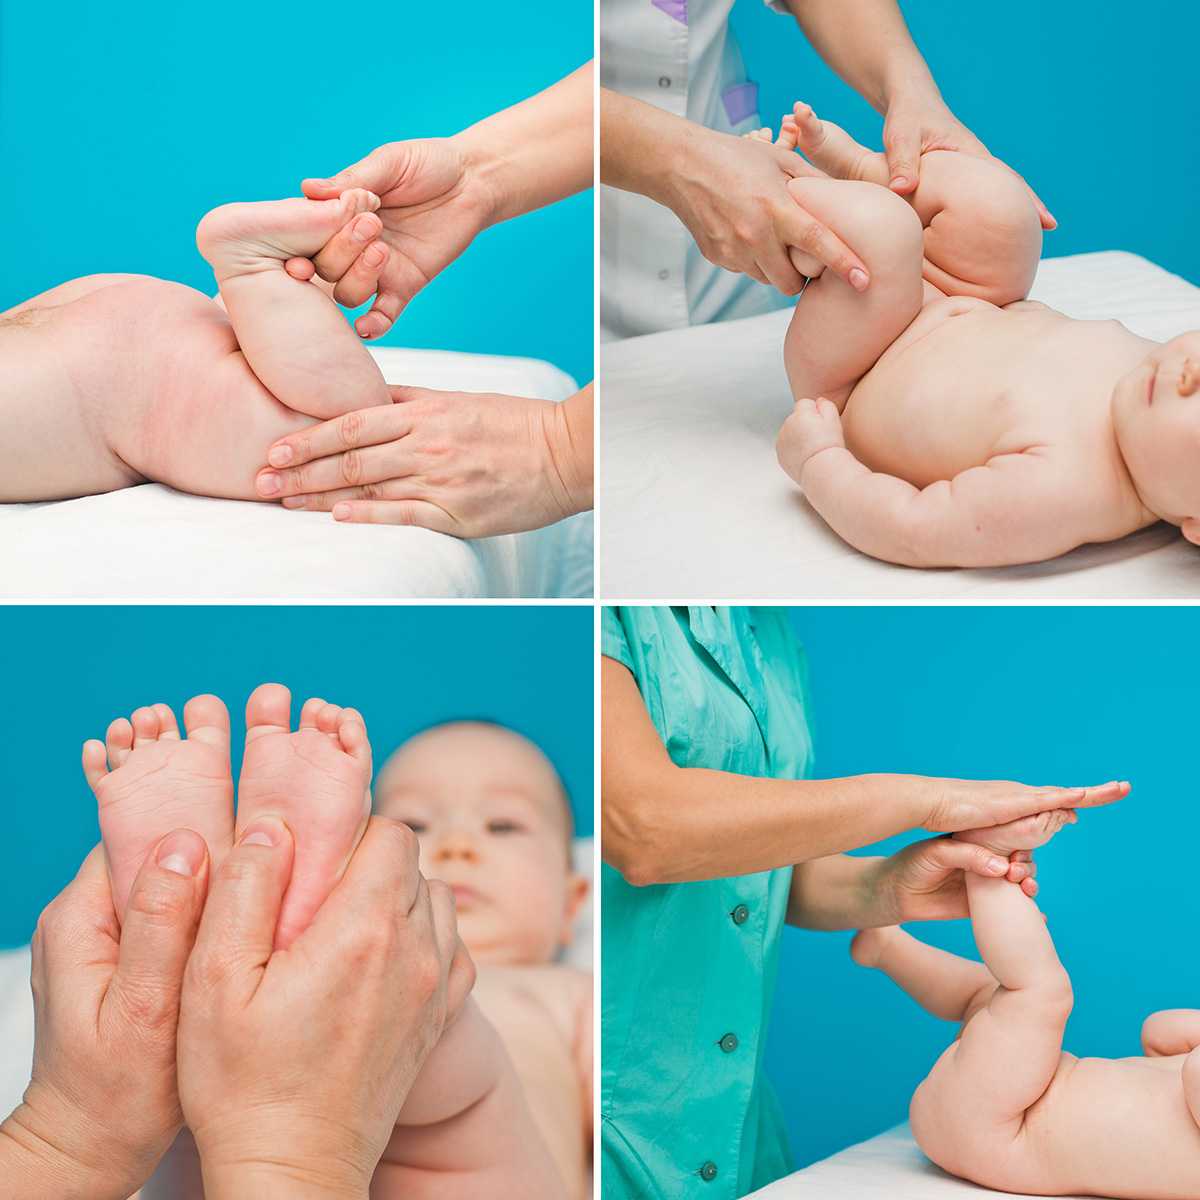 Как делать массаж новорожденным самостоятельно?